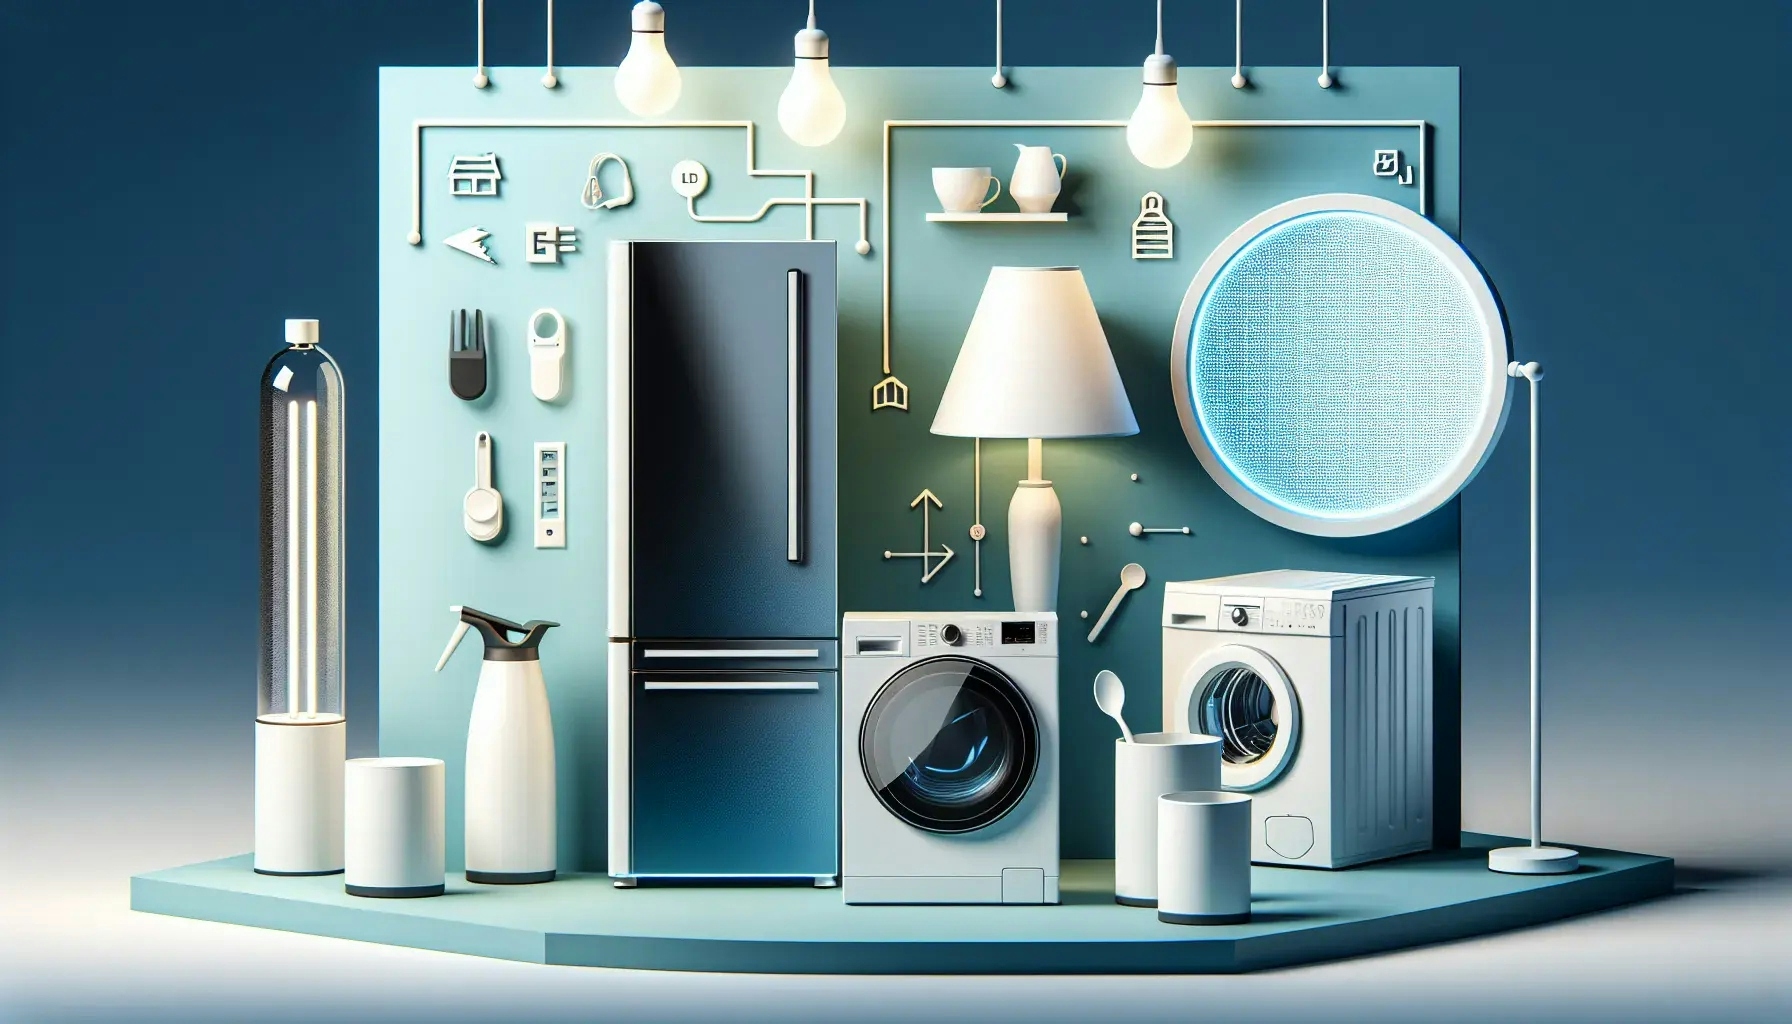 energy-efficient home appliances 2023